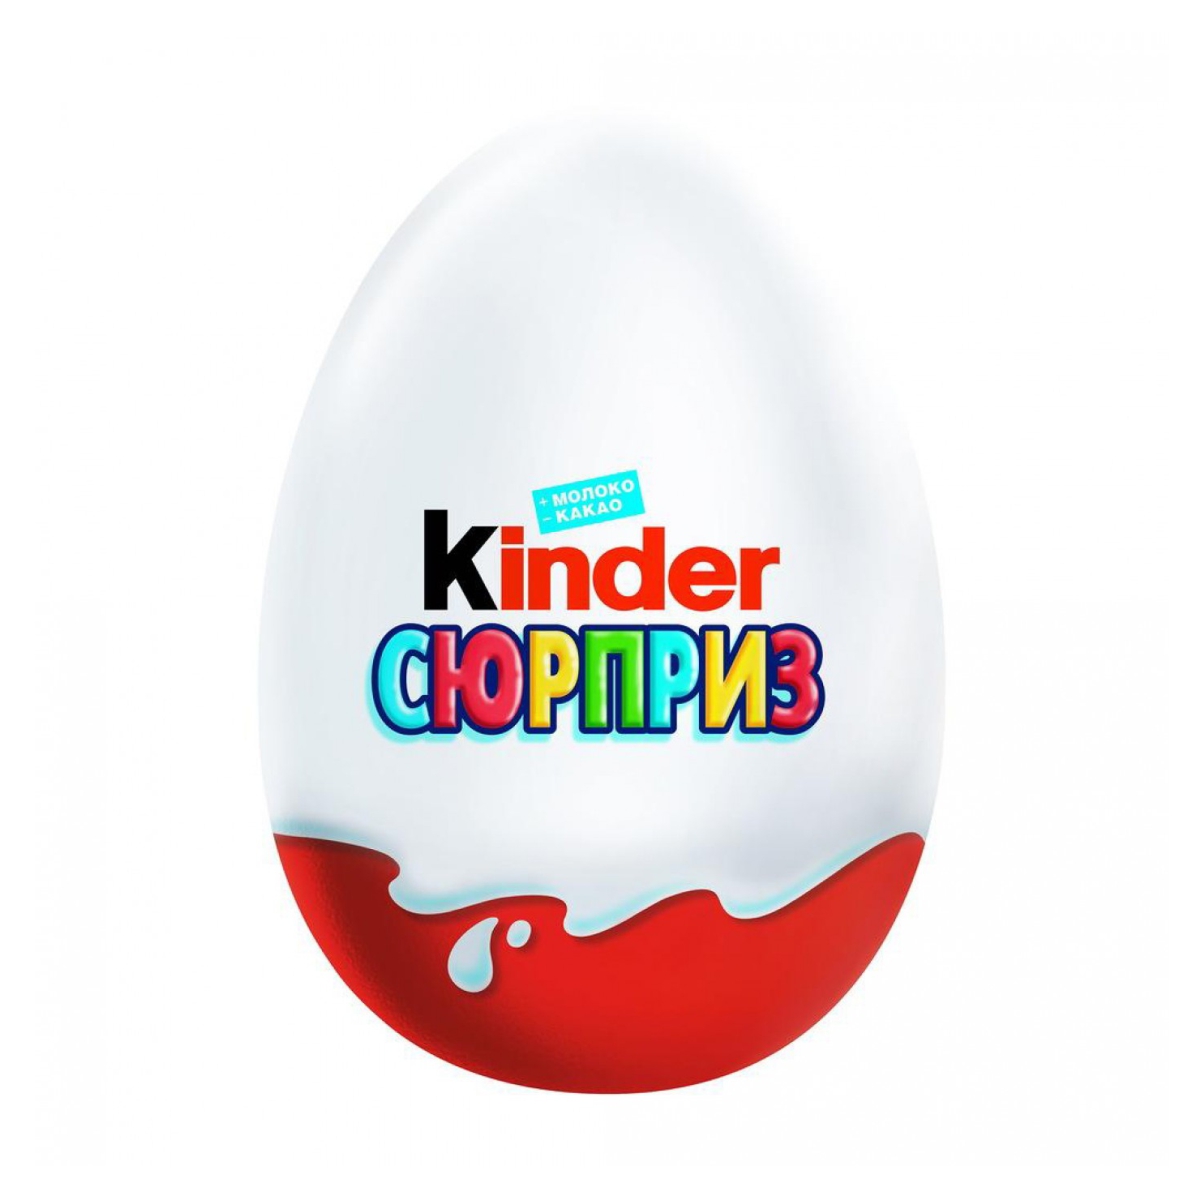 Шоколадное яйцо kinder "Киндер-сюрприз", 20 г. Киндер сюрприз яйцо шлколад. Яйцо ШОК. Киндер сюрприз 20г. Яички киндер